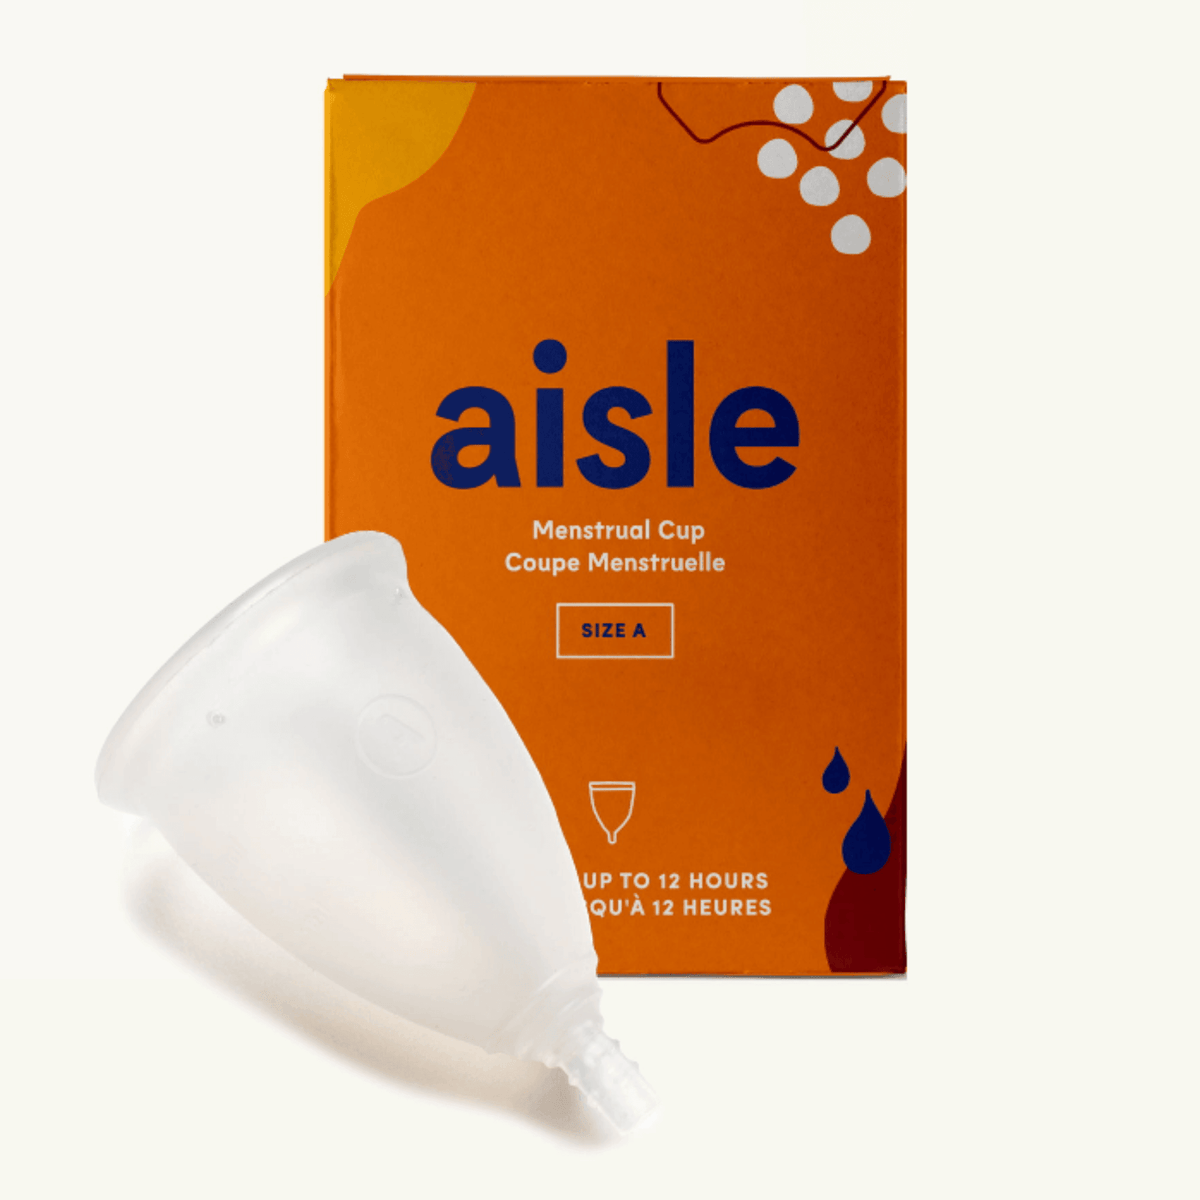 Aisle- Coupe menstruelle (A et B) - tagrandmereapprouve